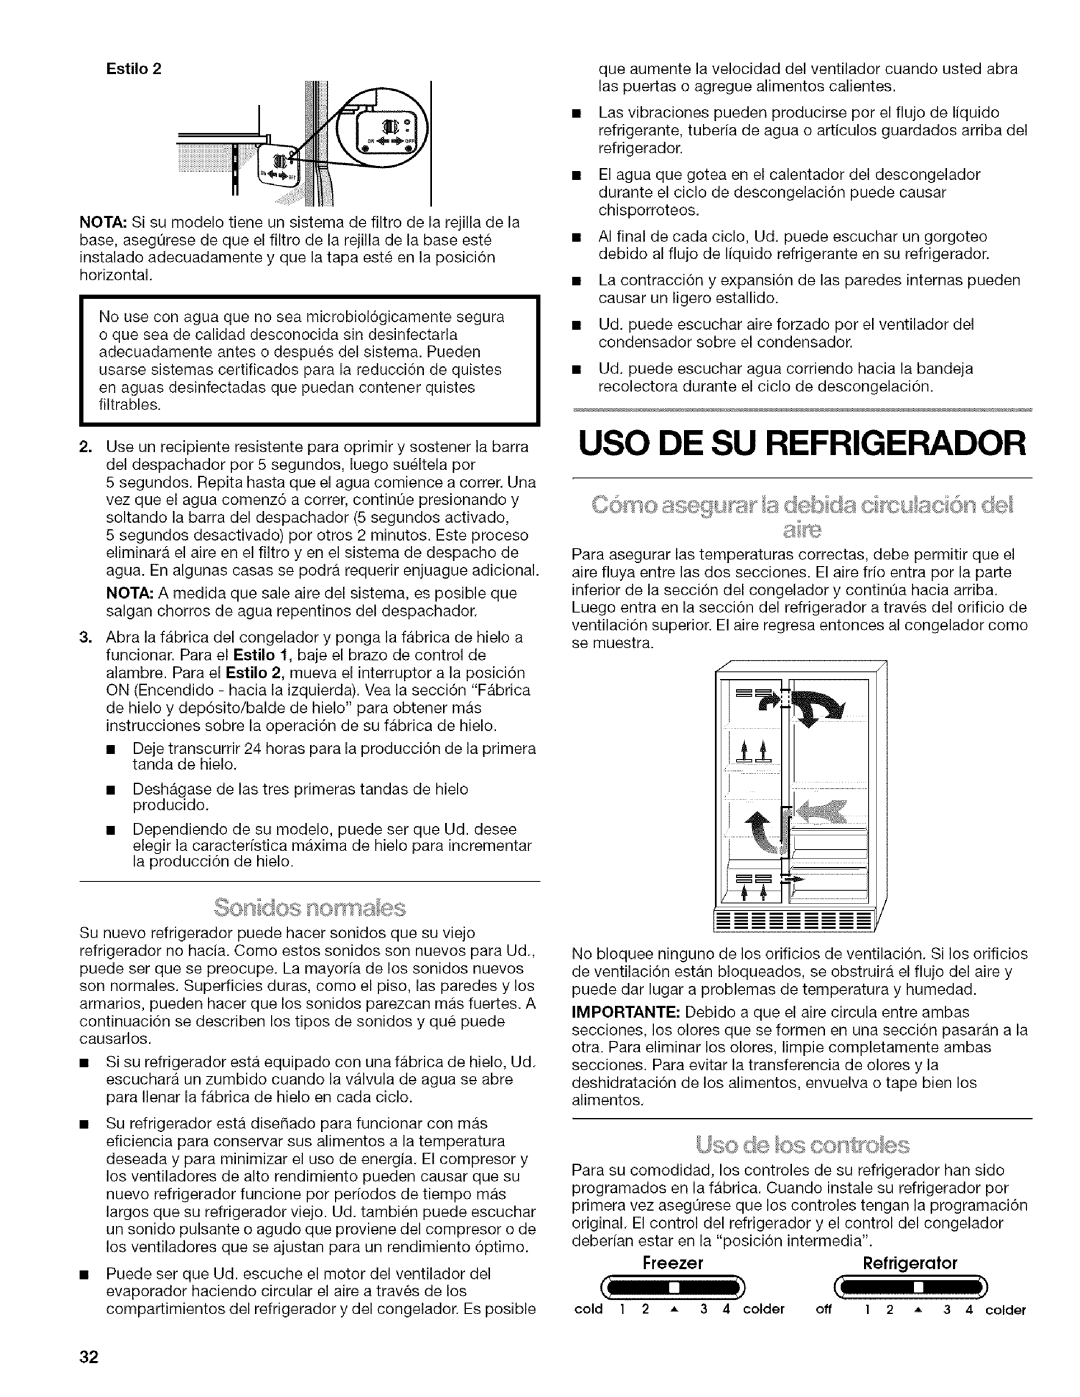 Kenmore WIOI67097A manual Uso De Su Refrigerador, o asegun: a debris c s uac o s de, Estilo, FreezerRefrigerator 